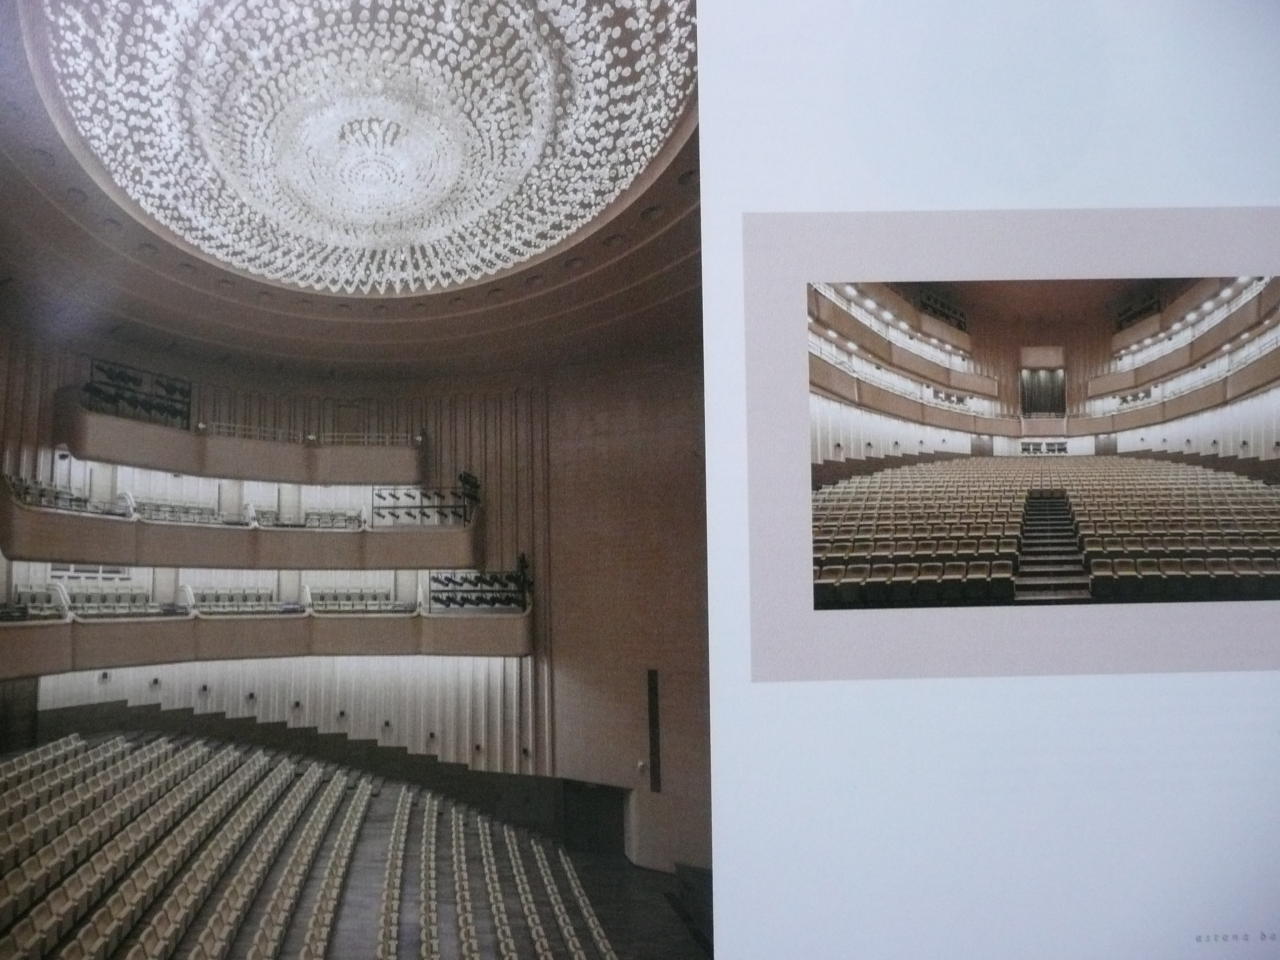 В Казахстане вышла книга азербайджанского музыковеда о знаменитом театре "Астана балет"